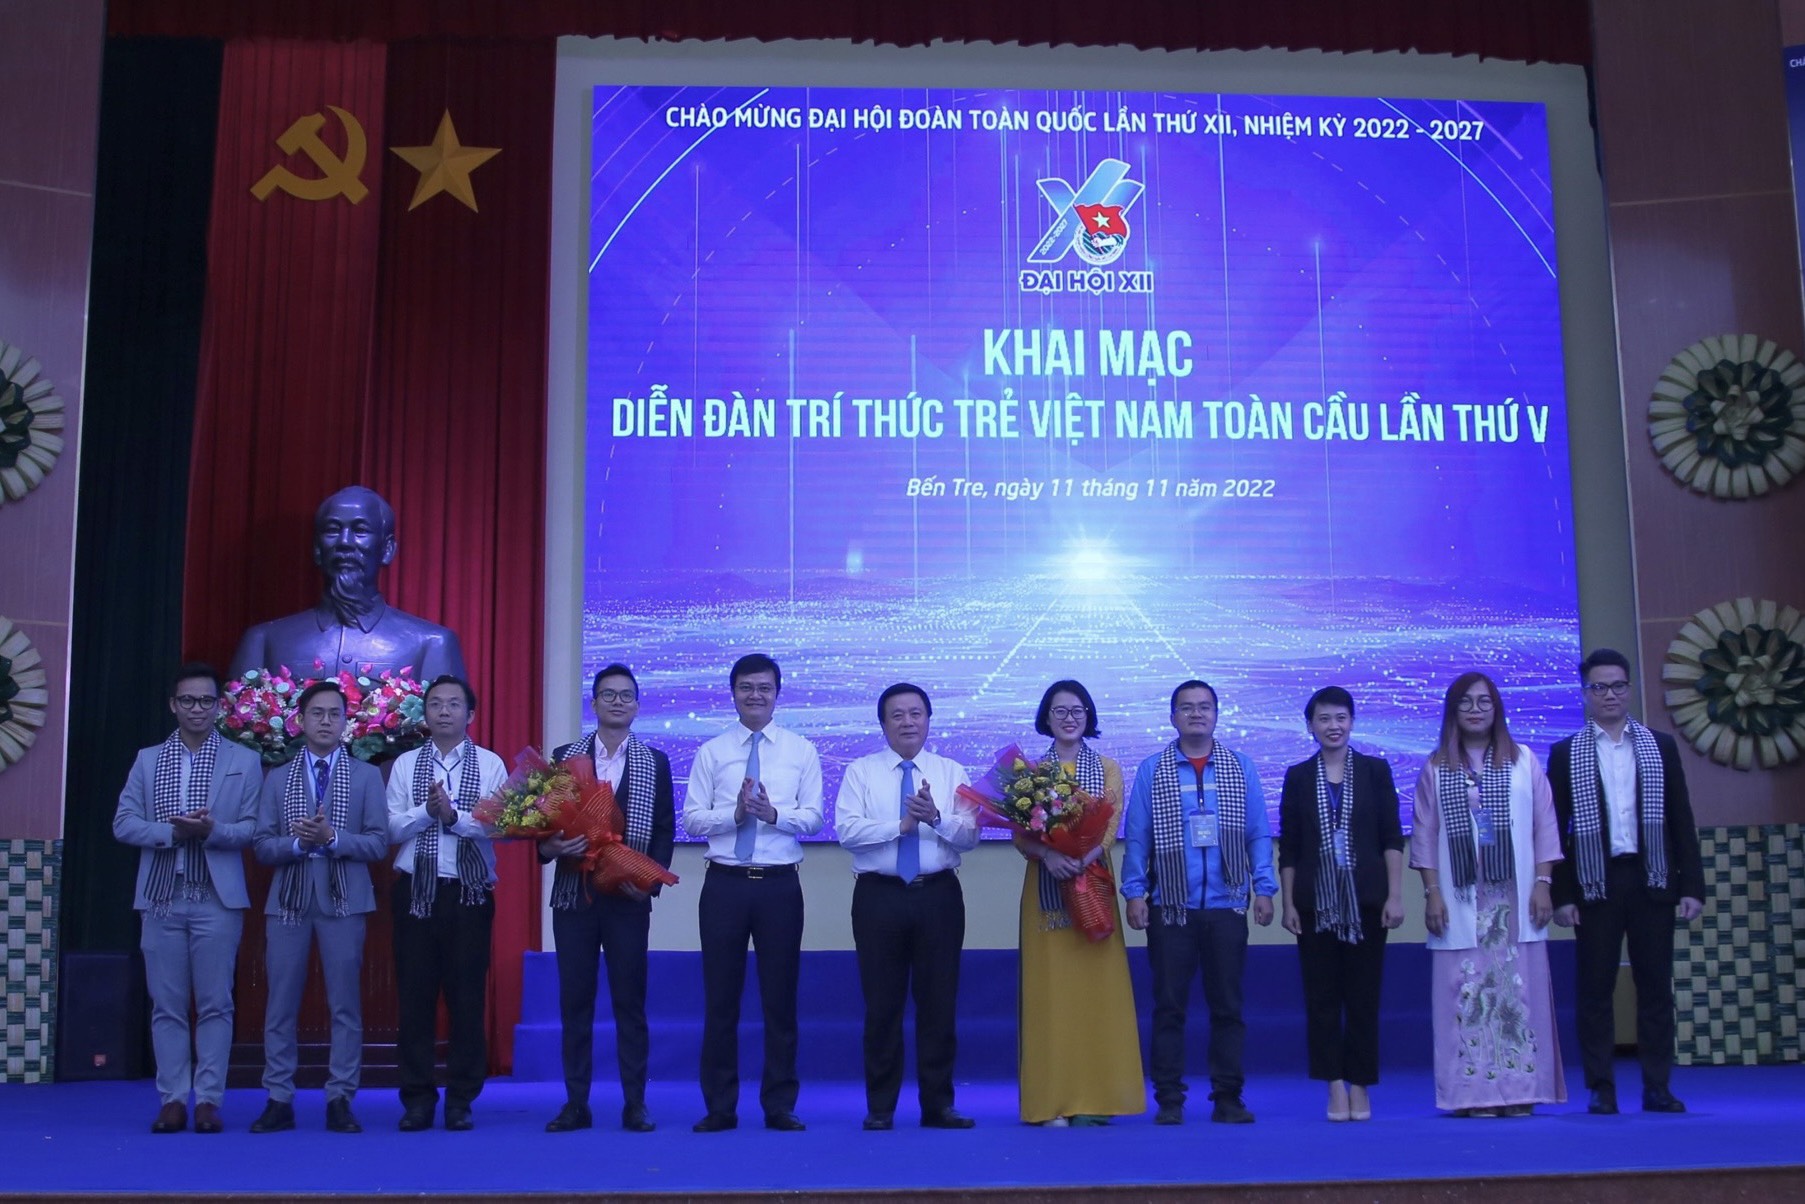 Ra mắt Ban điều hành Mạng lưới trí thức trẻ Việt Nam toàn cầu giai đoạn 2022-2024.